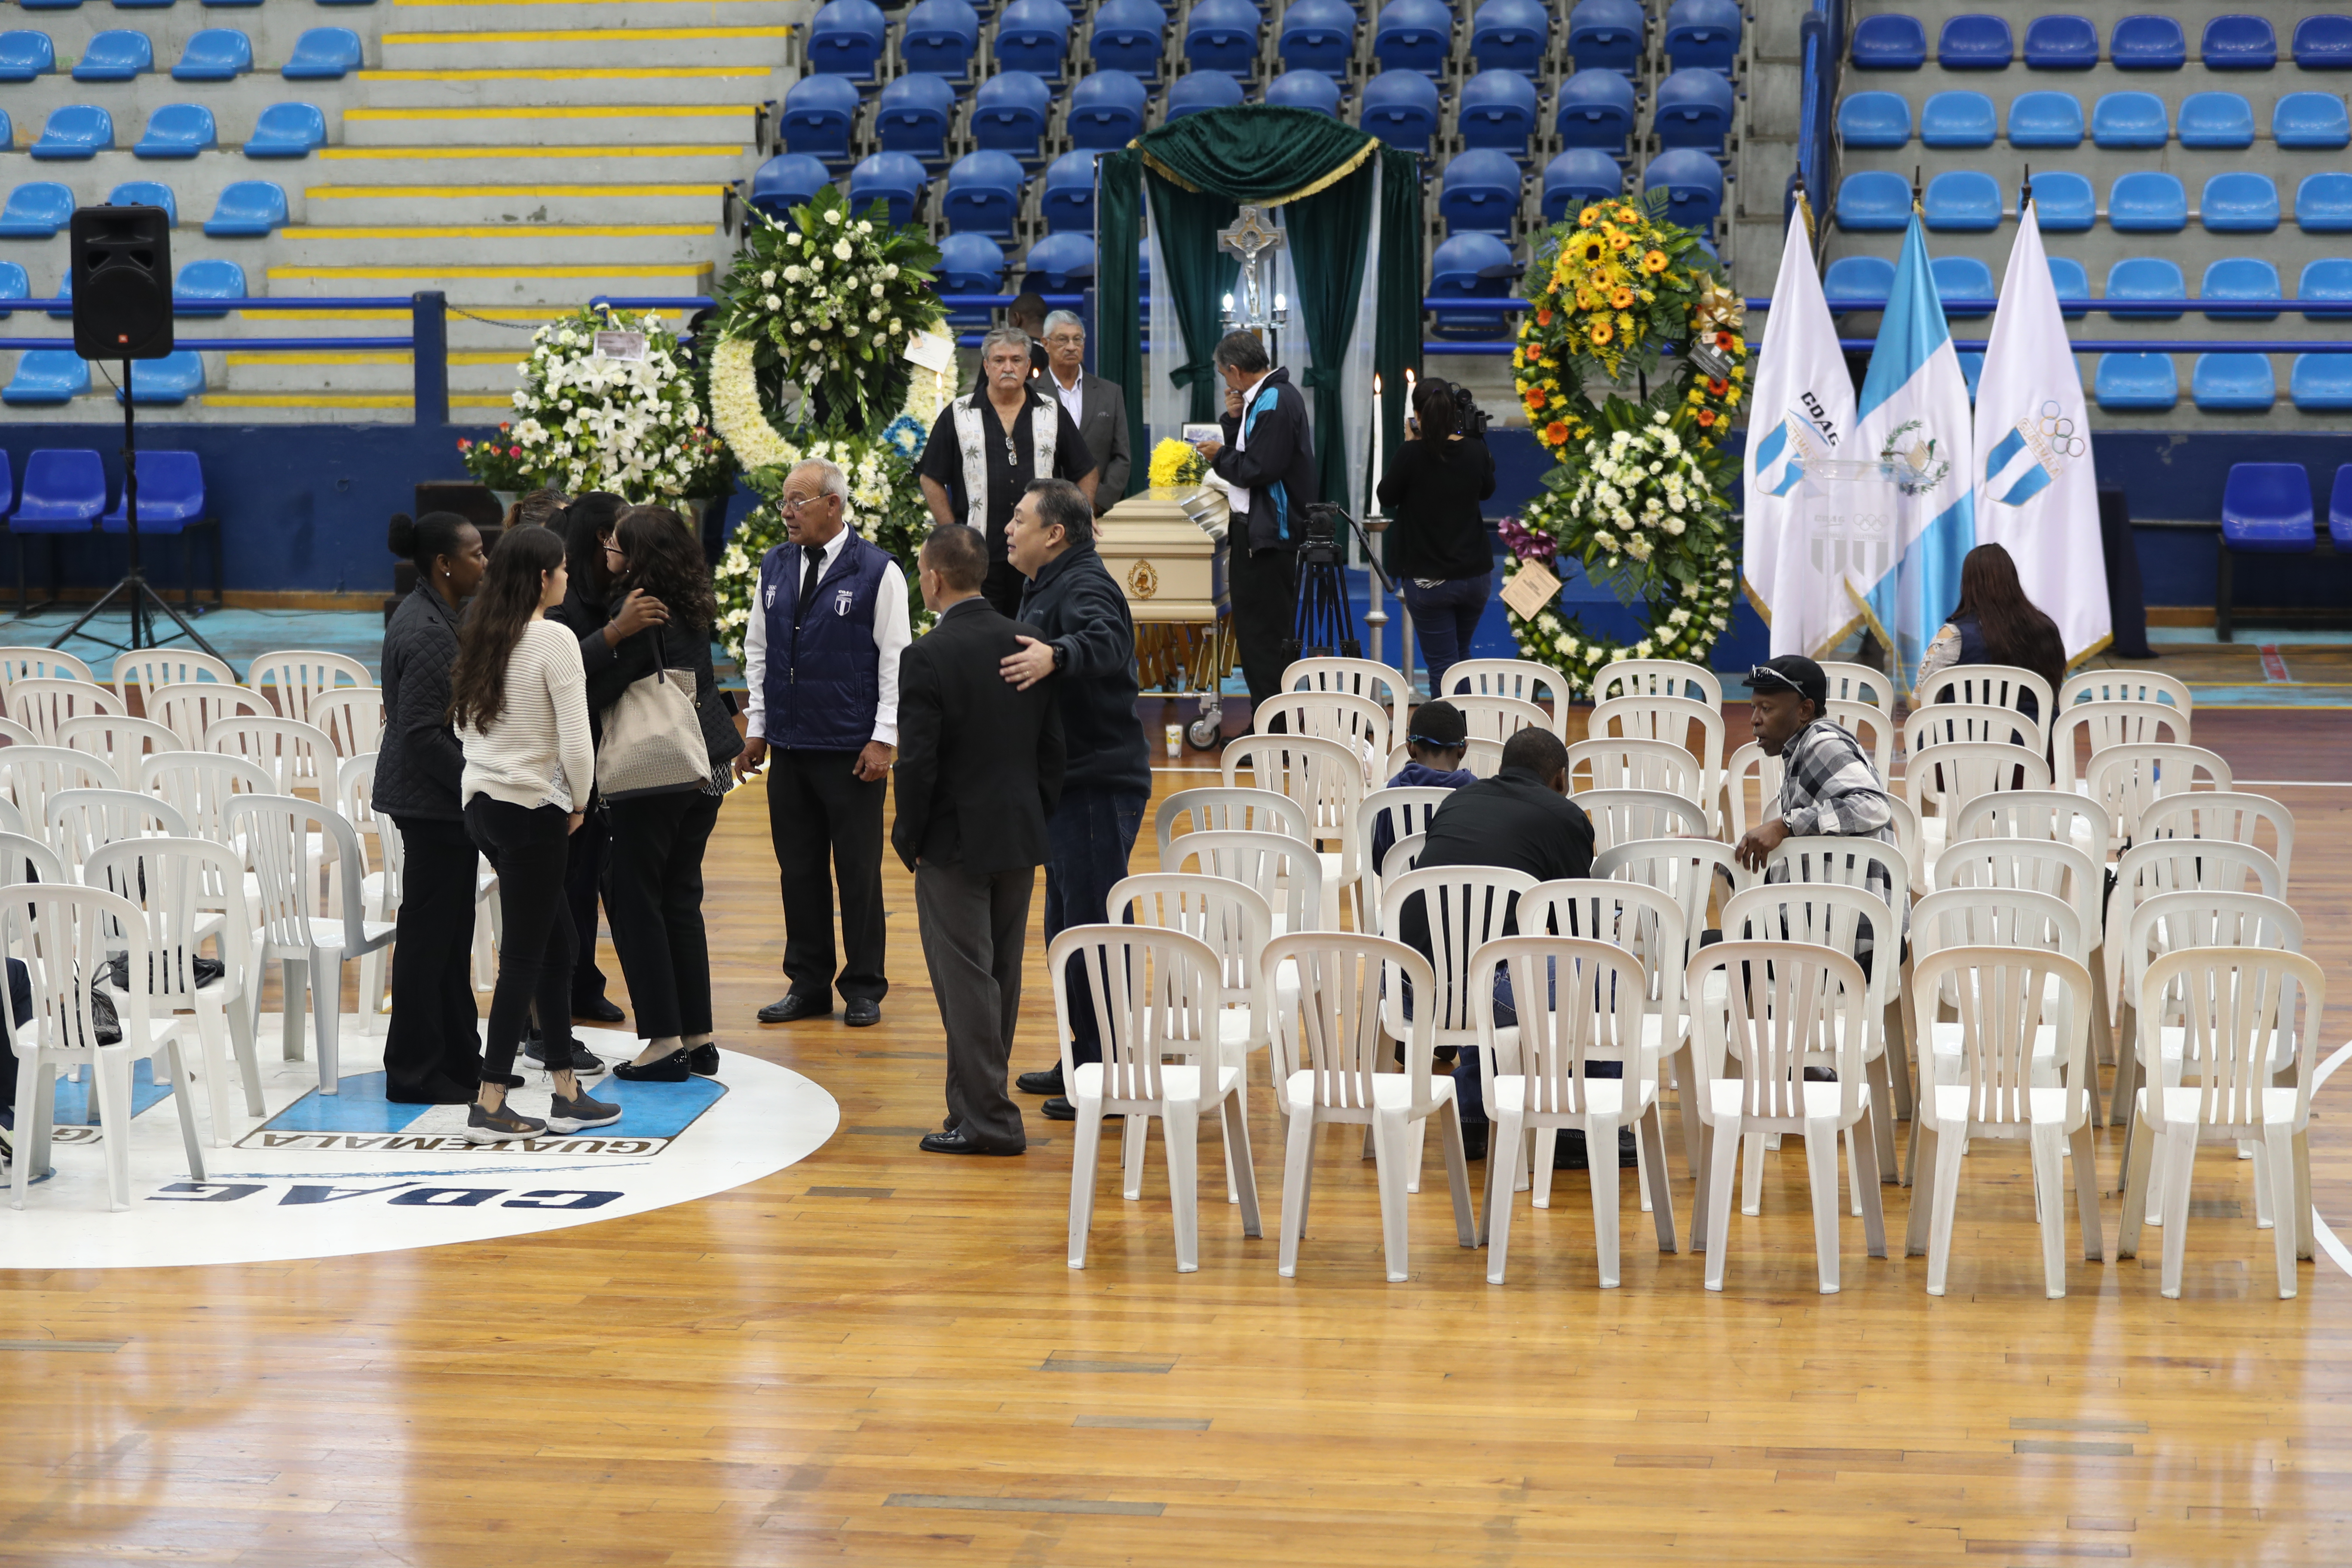 El funeral de Teodoro Palacios Flores se lleva a cabo en el gimnasio que lleva su nombre, en la zona 5 capitalina. (Foto Prensa Libre: Francisco Sánchez).